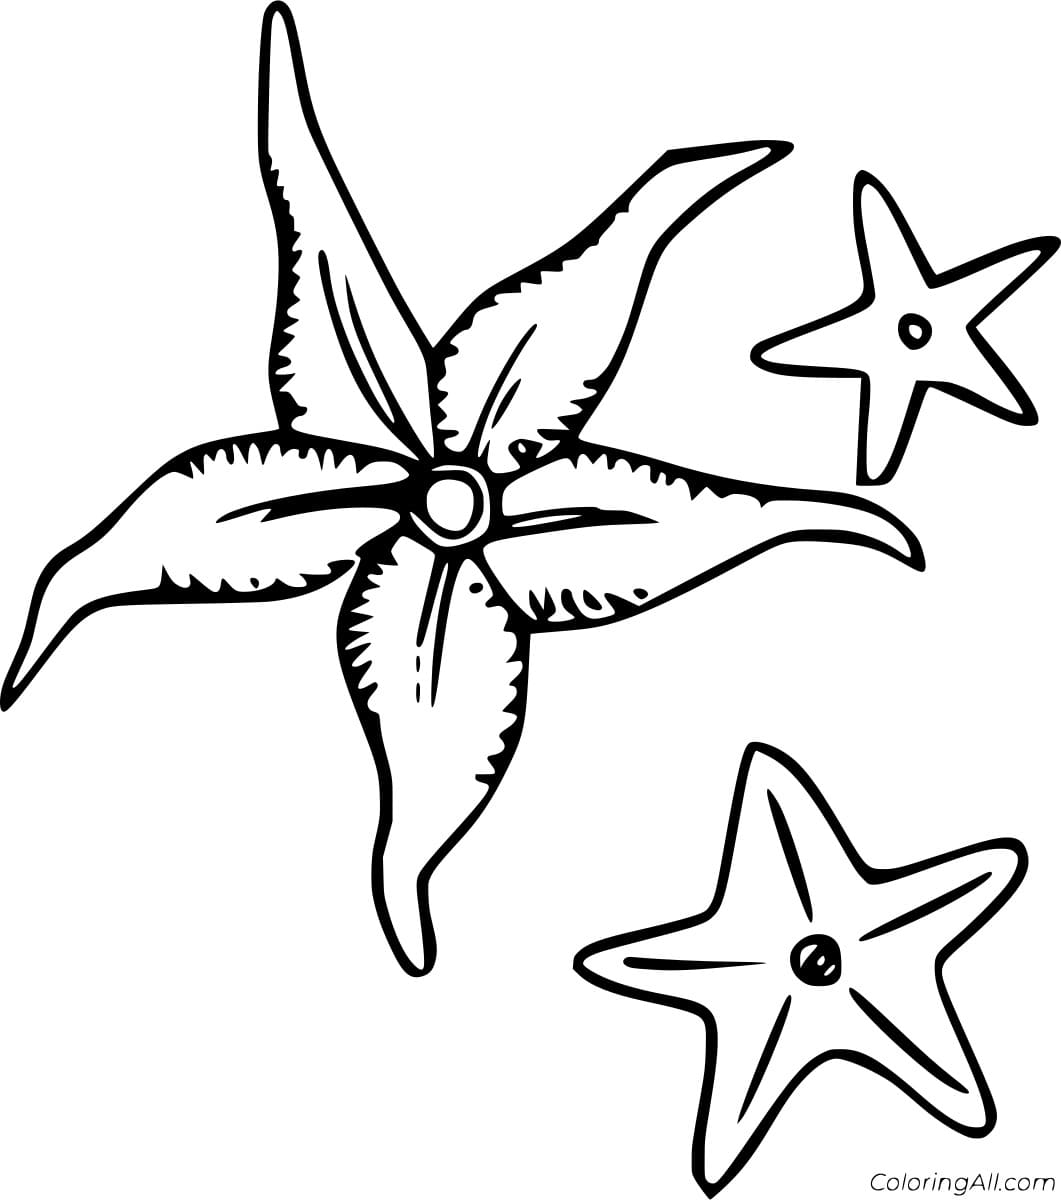 Three Starfish Image